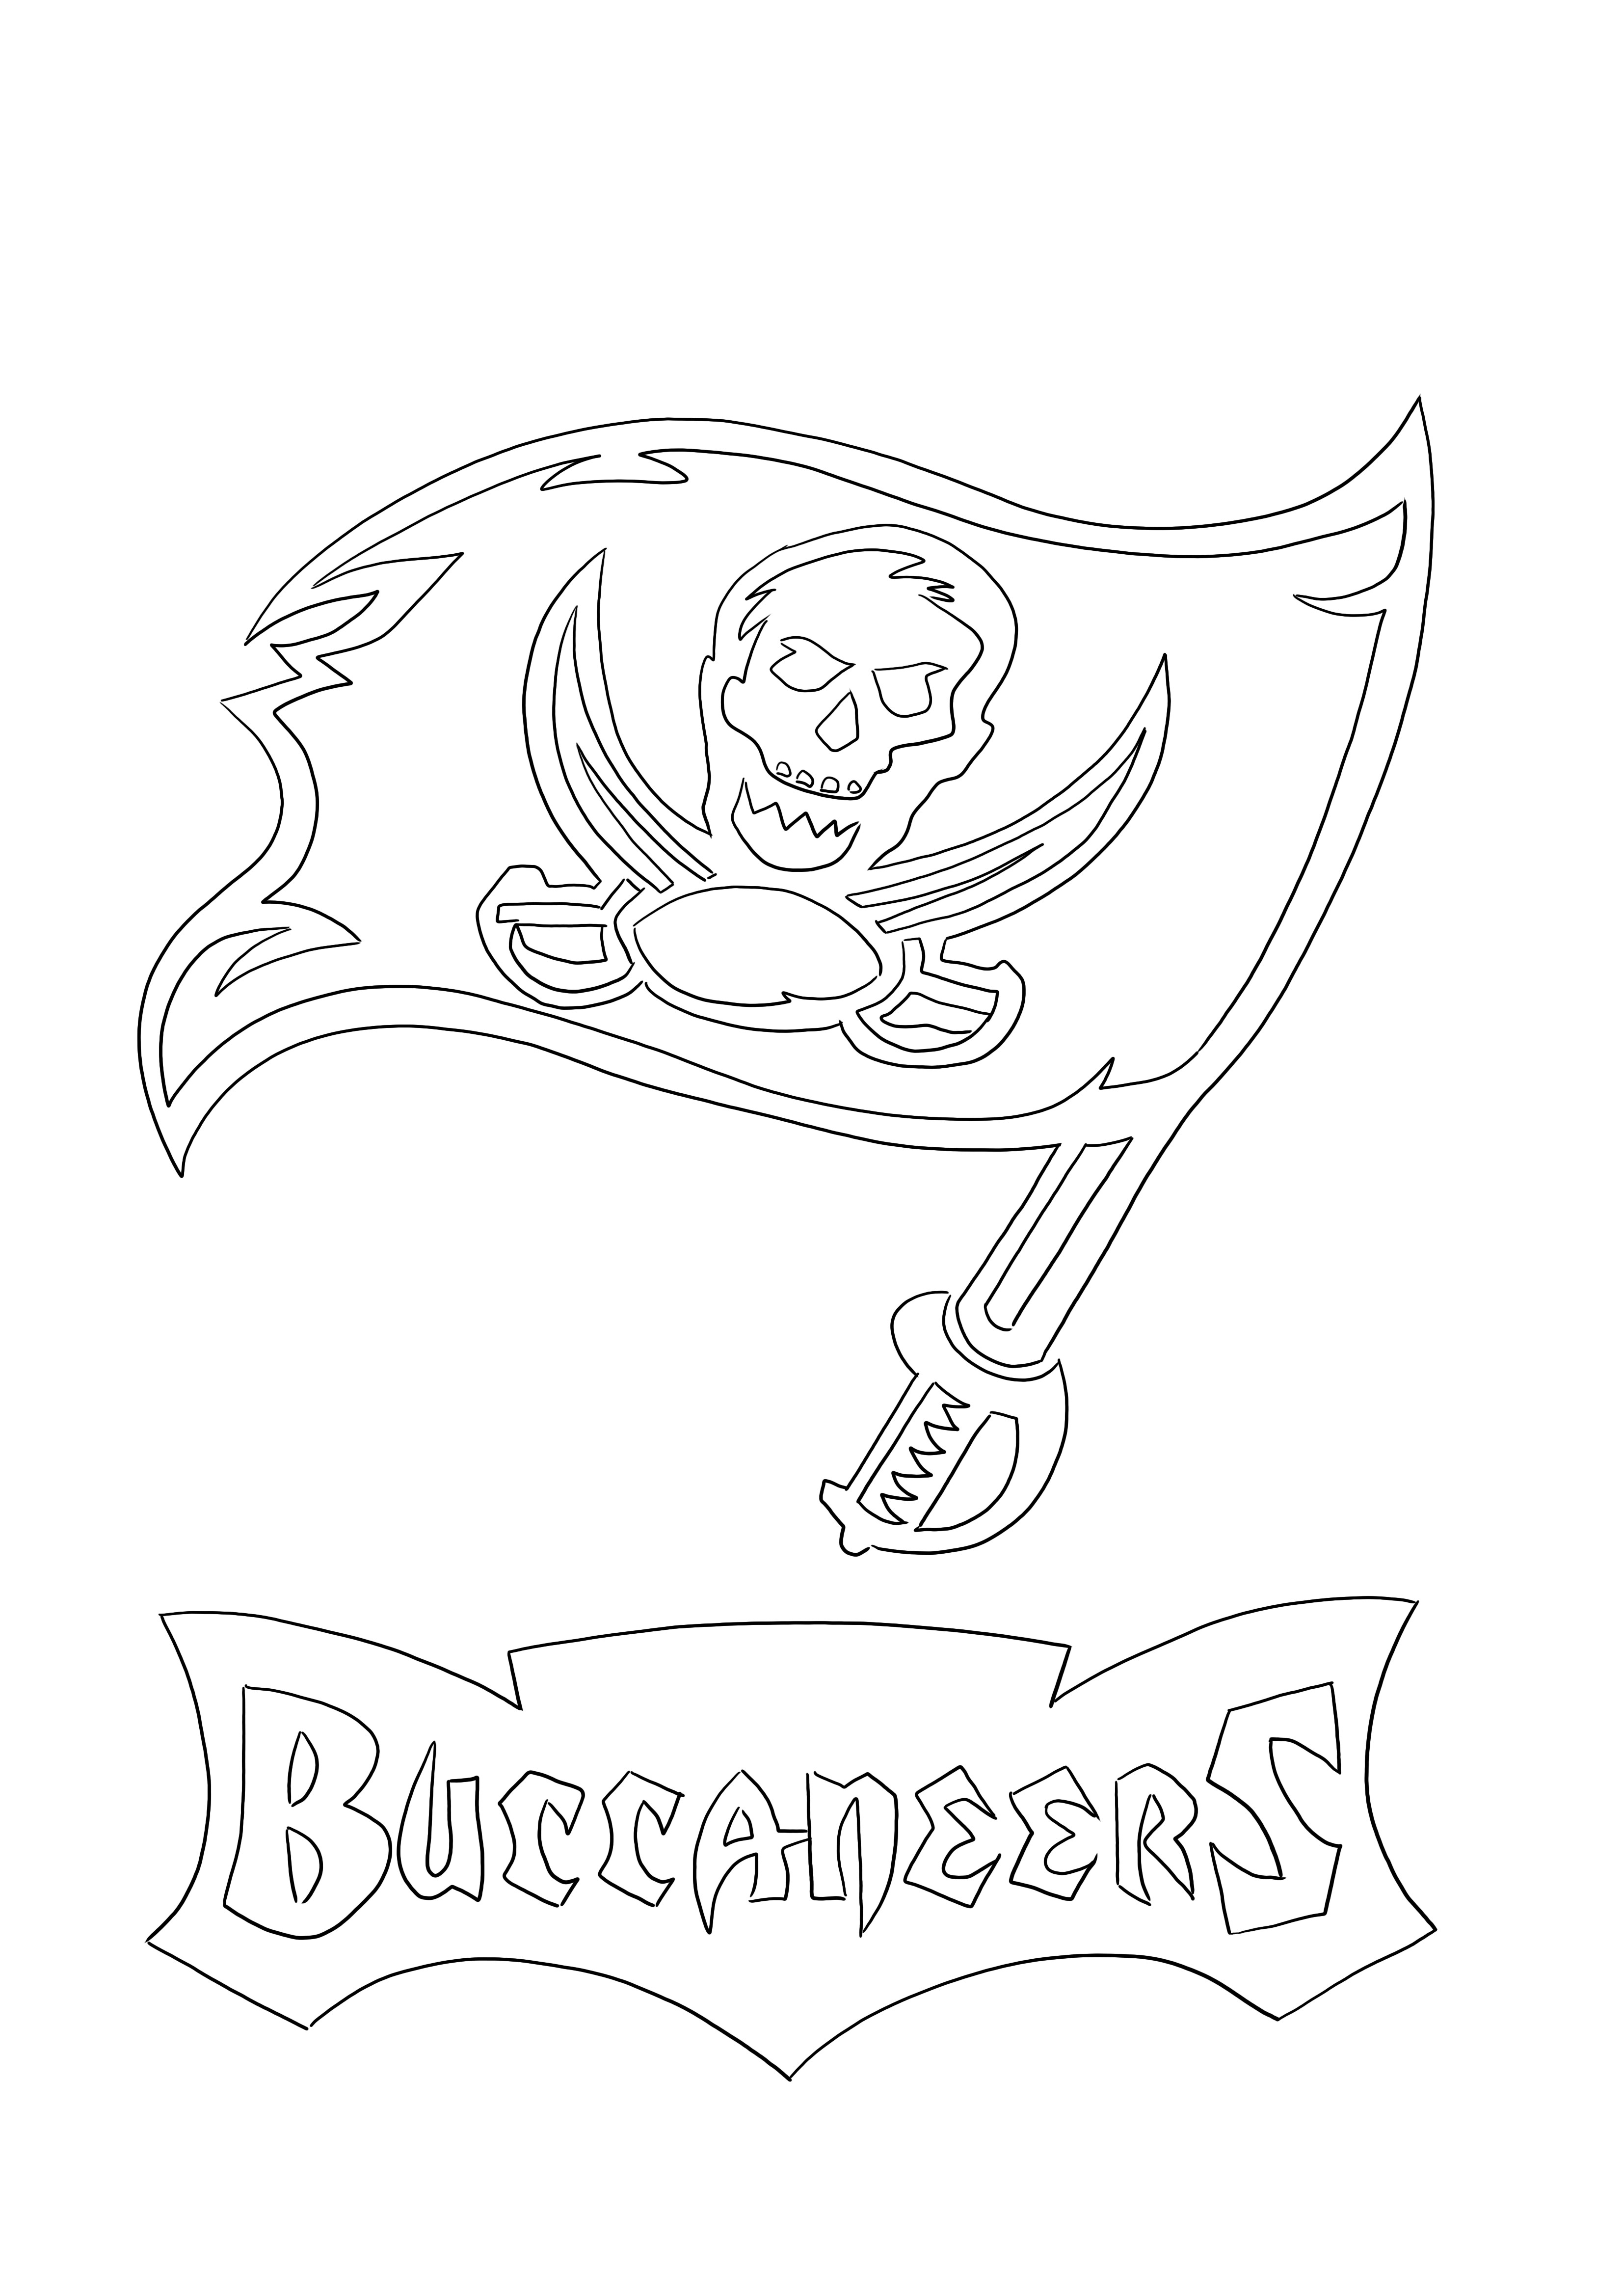 Çocuklar için yazdırmak veya indirmek için ücretsiz Tampa Bay Buccaneers Logo boyama resmi